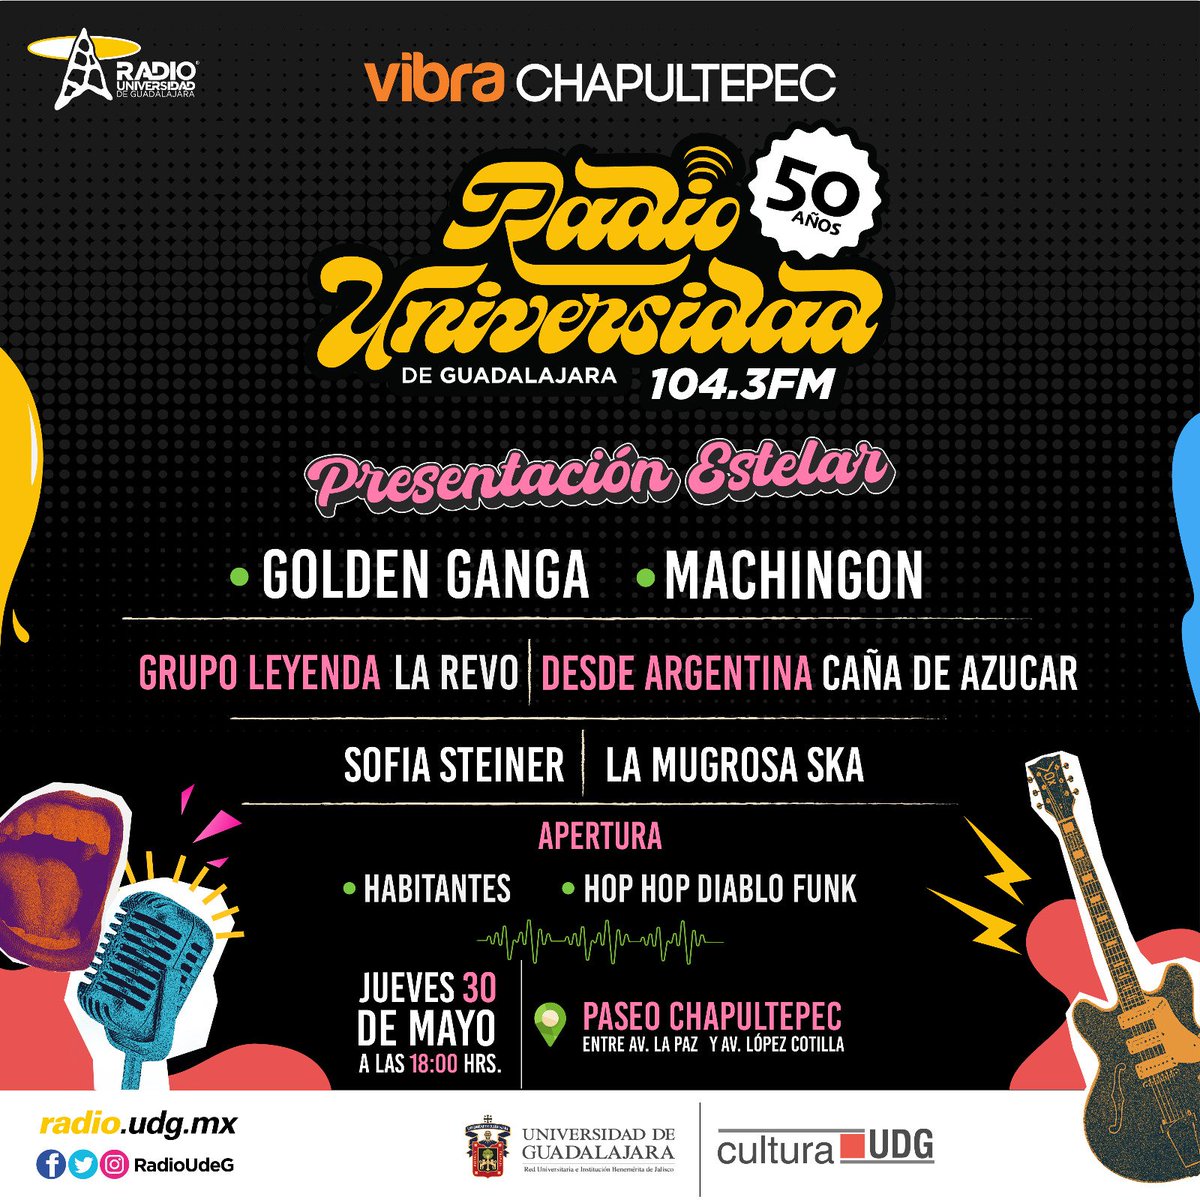 Vuelven los conciertos de Vibra Chapultepec. Vamos a celebrar los primeros 50 años al aire de @RadioUdeG Ahí nos vemos. ¡Que las calles sean para bailar!